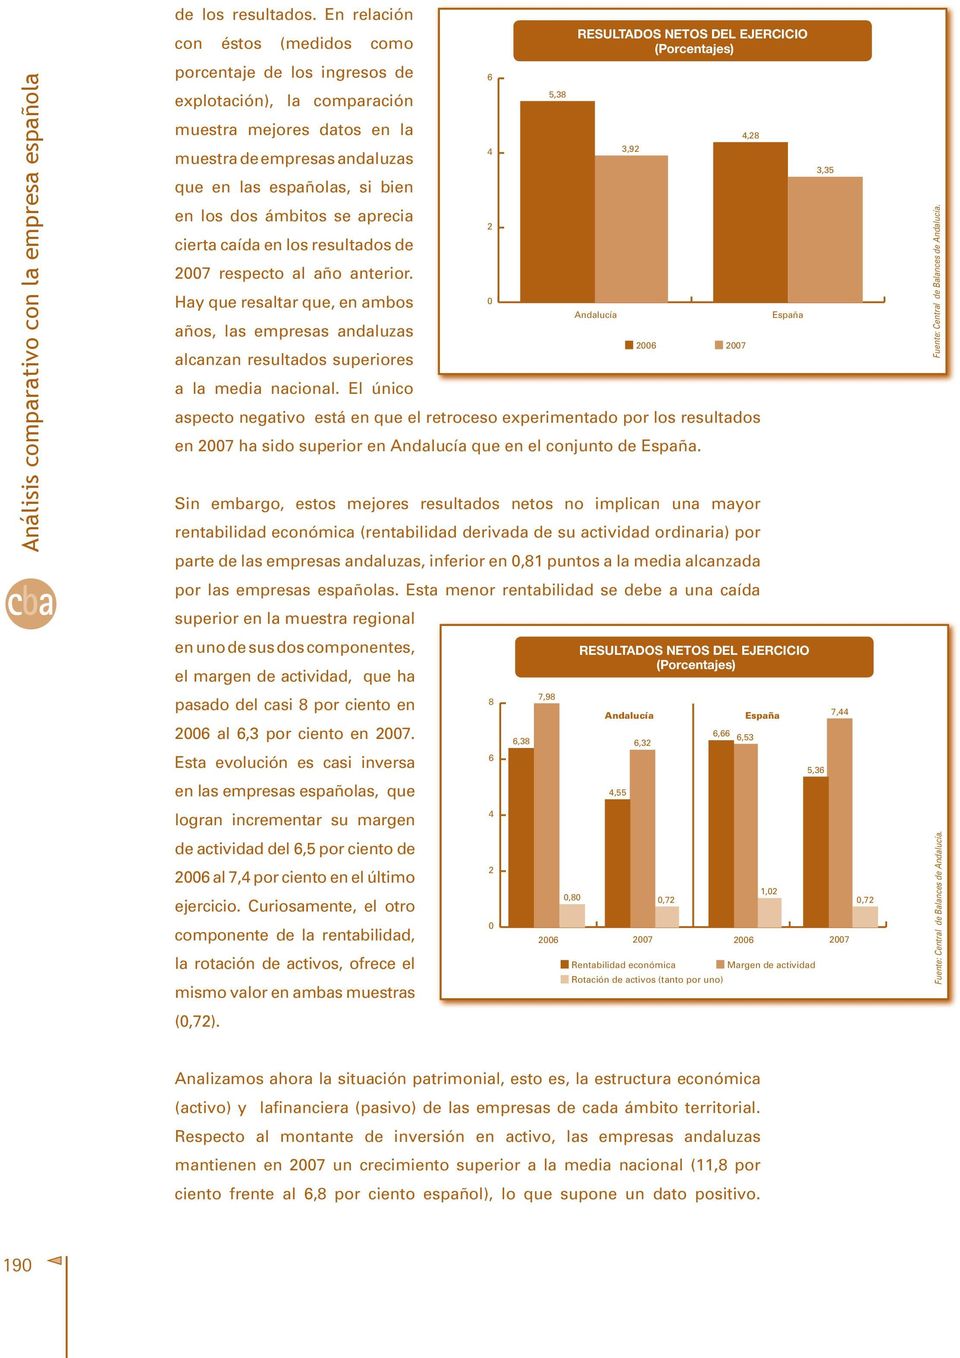 andaluzas que en las españolas, si bien en los dos ámbitos se aprecia 2 cierta caída en los resultados de 2007 respecto al año anterior.